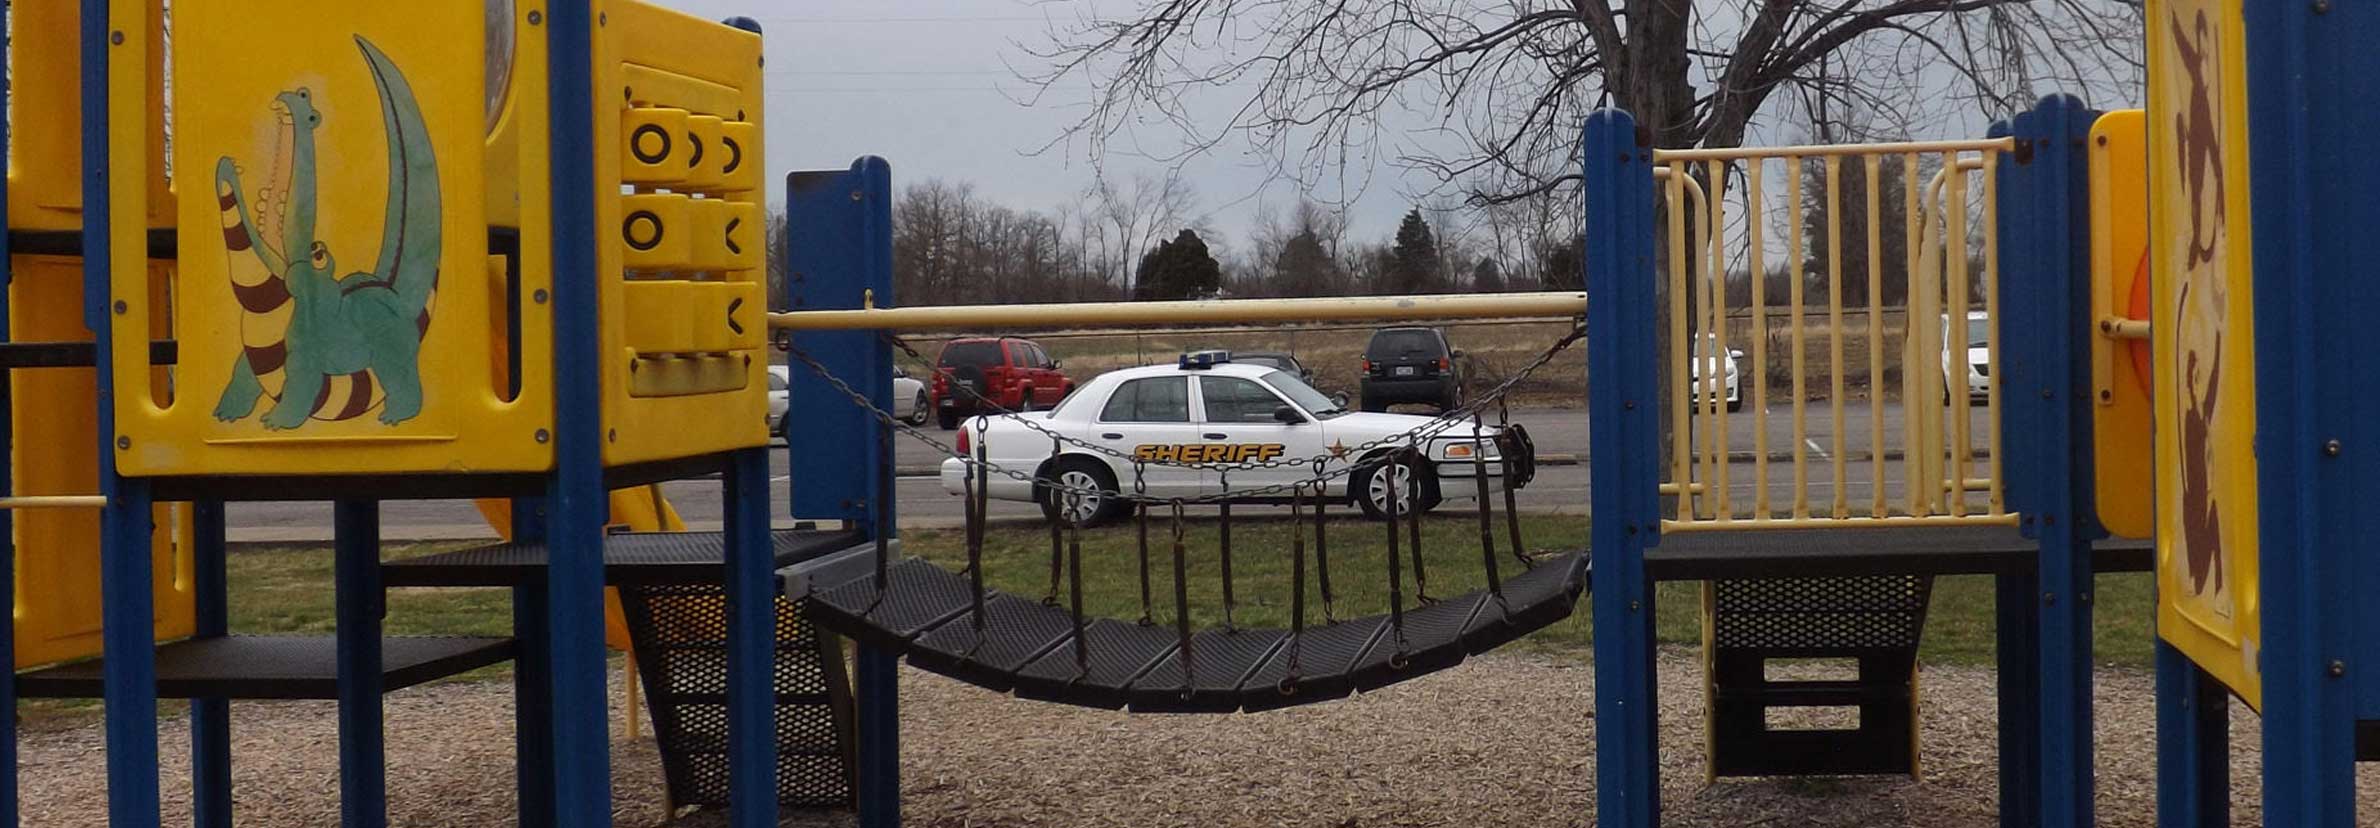 Playground and KY Sheriff Vehicle